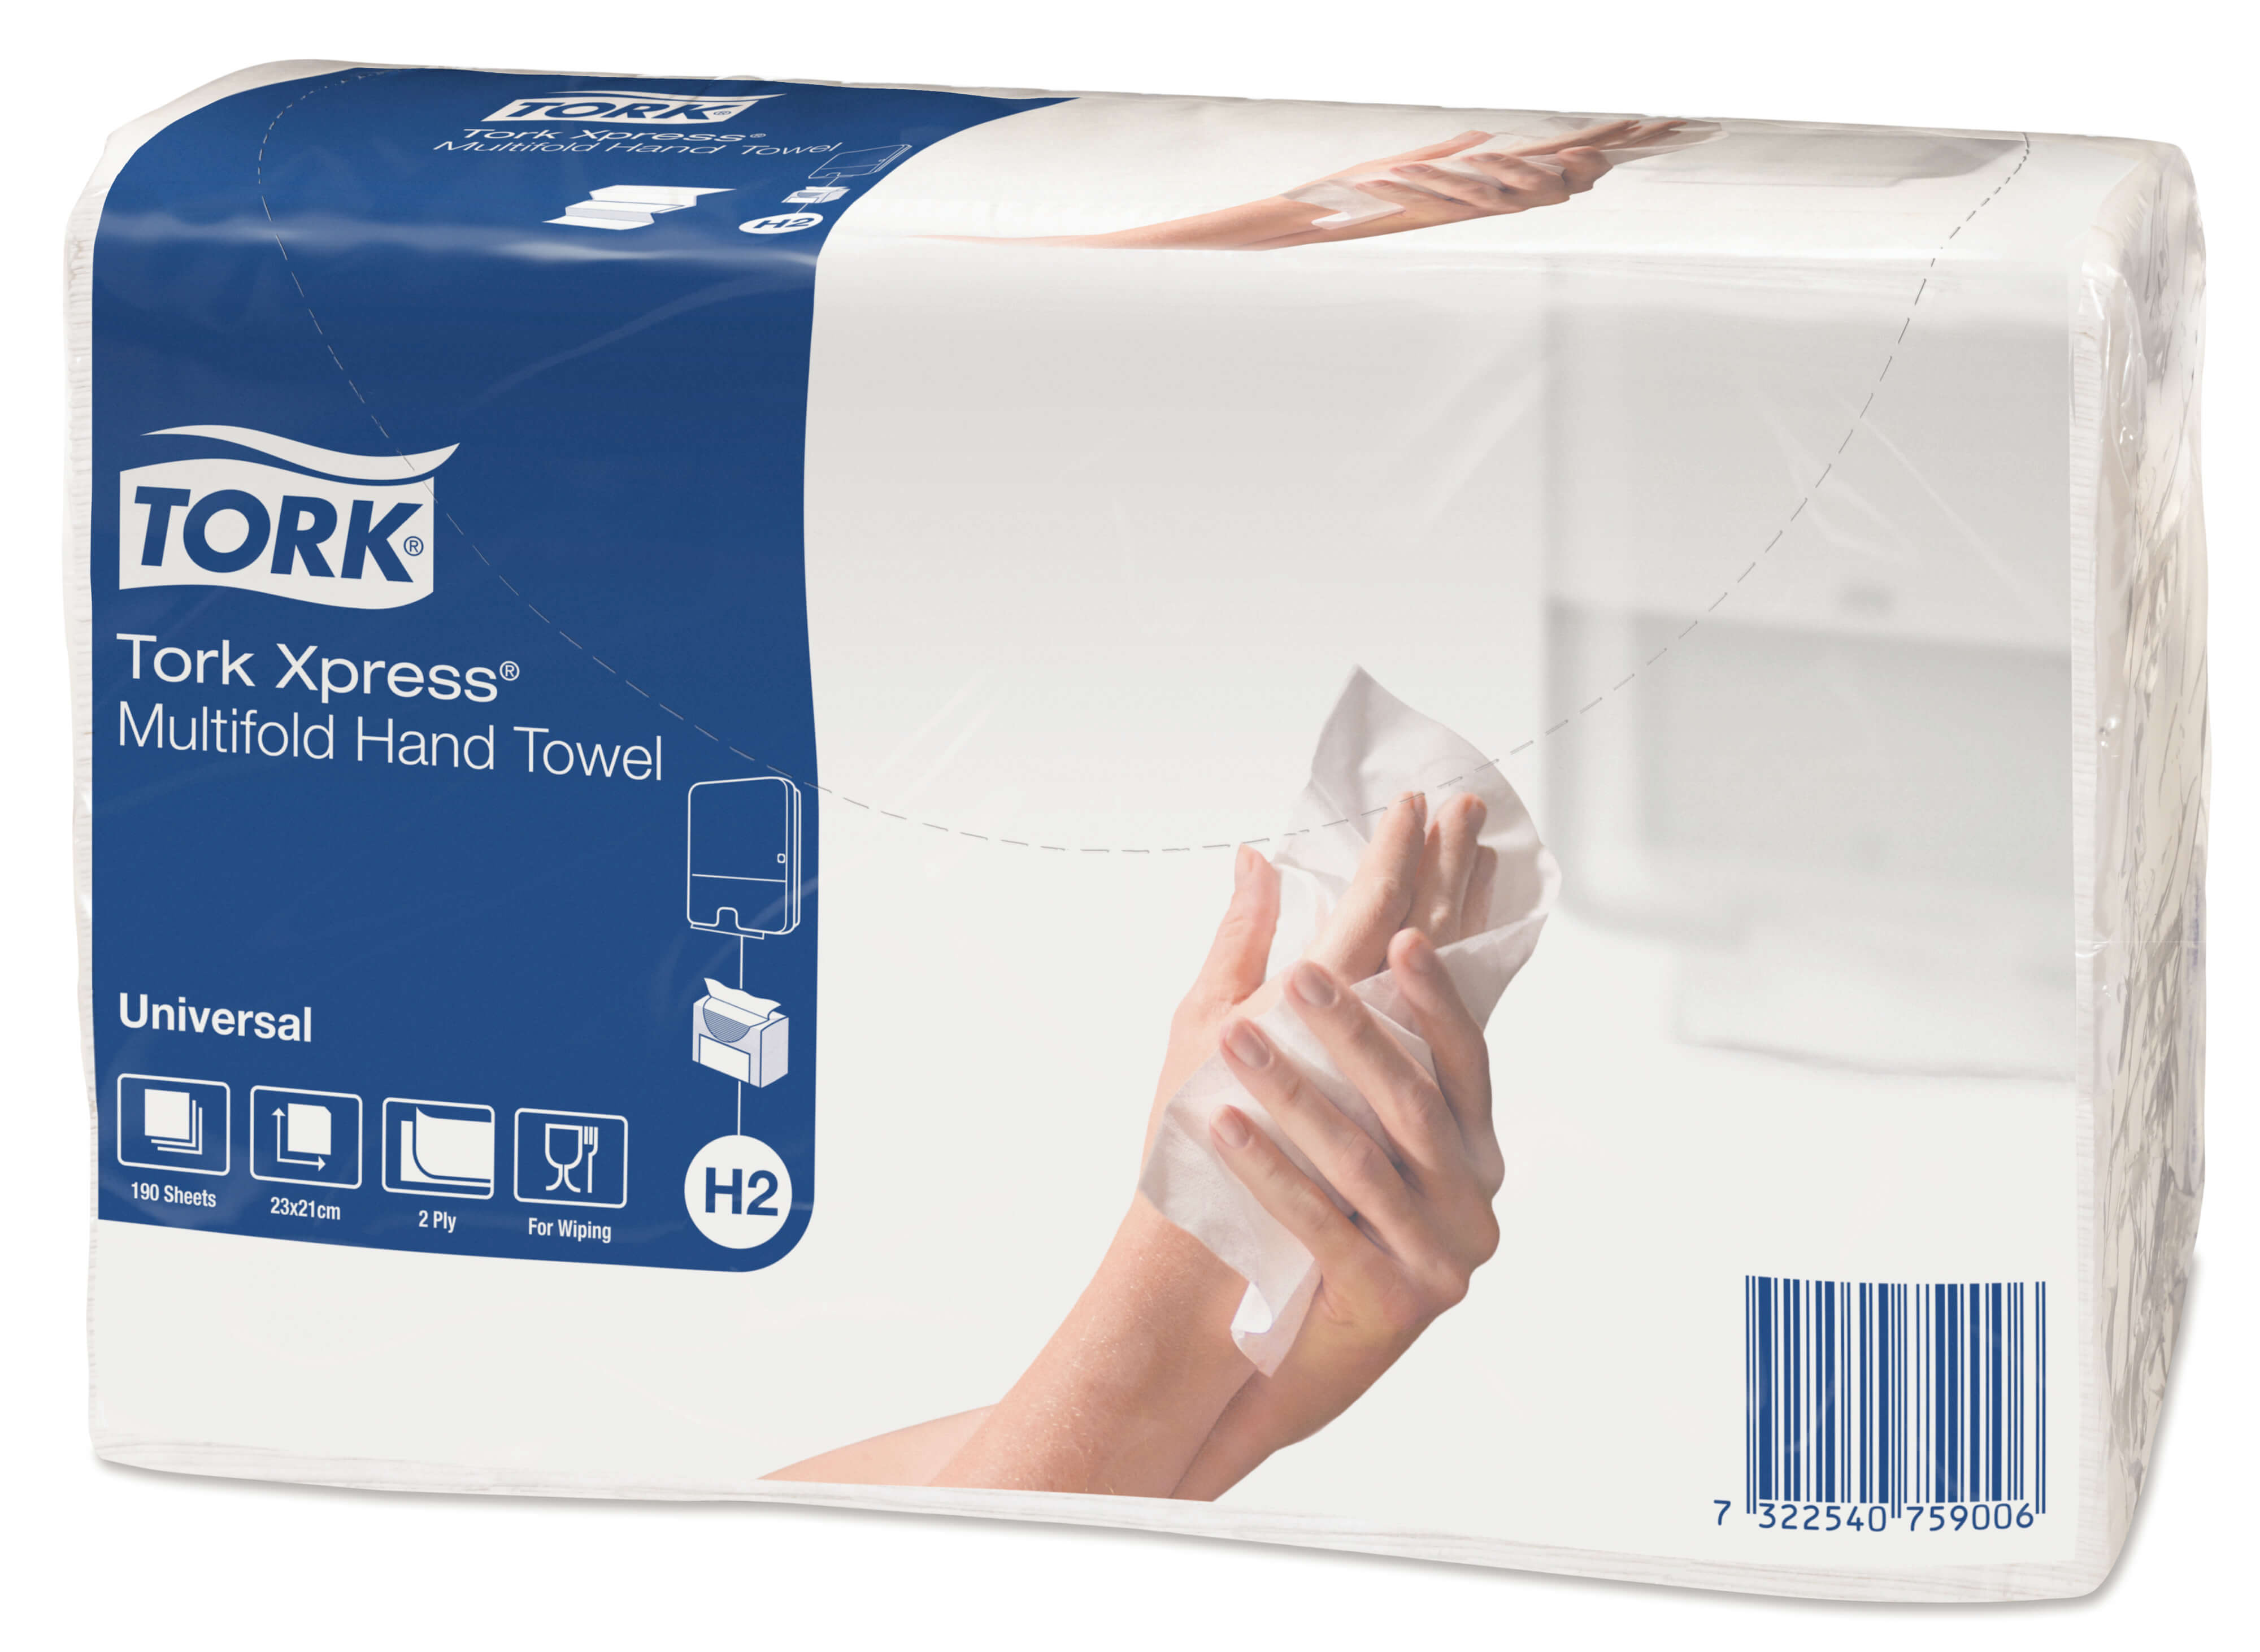 Листовые бумажные полотенца Tork Xpress® Universal двухслойные, Multifold сложения, 190 листов